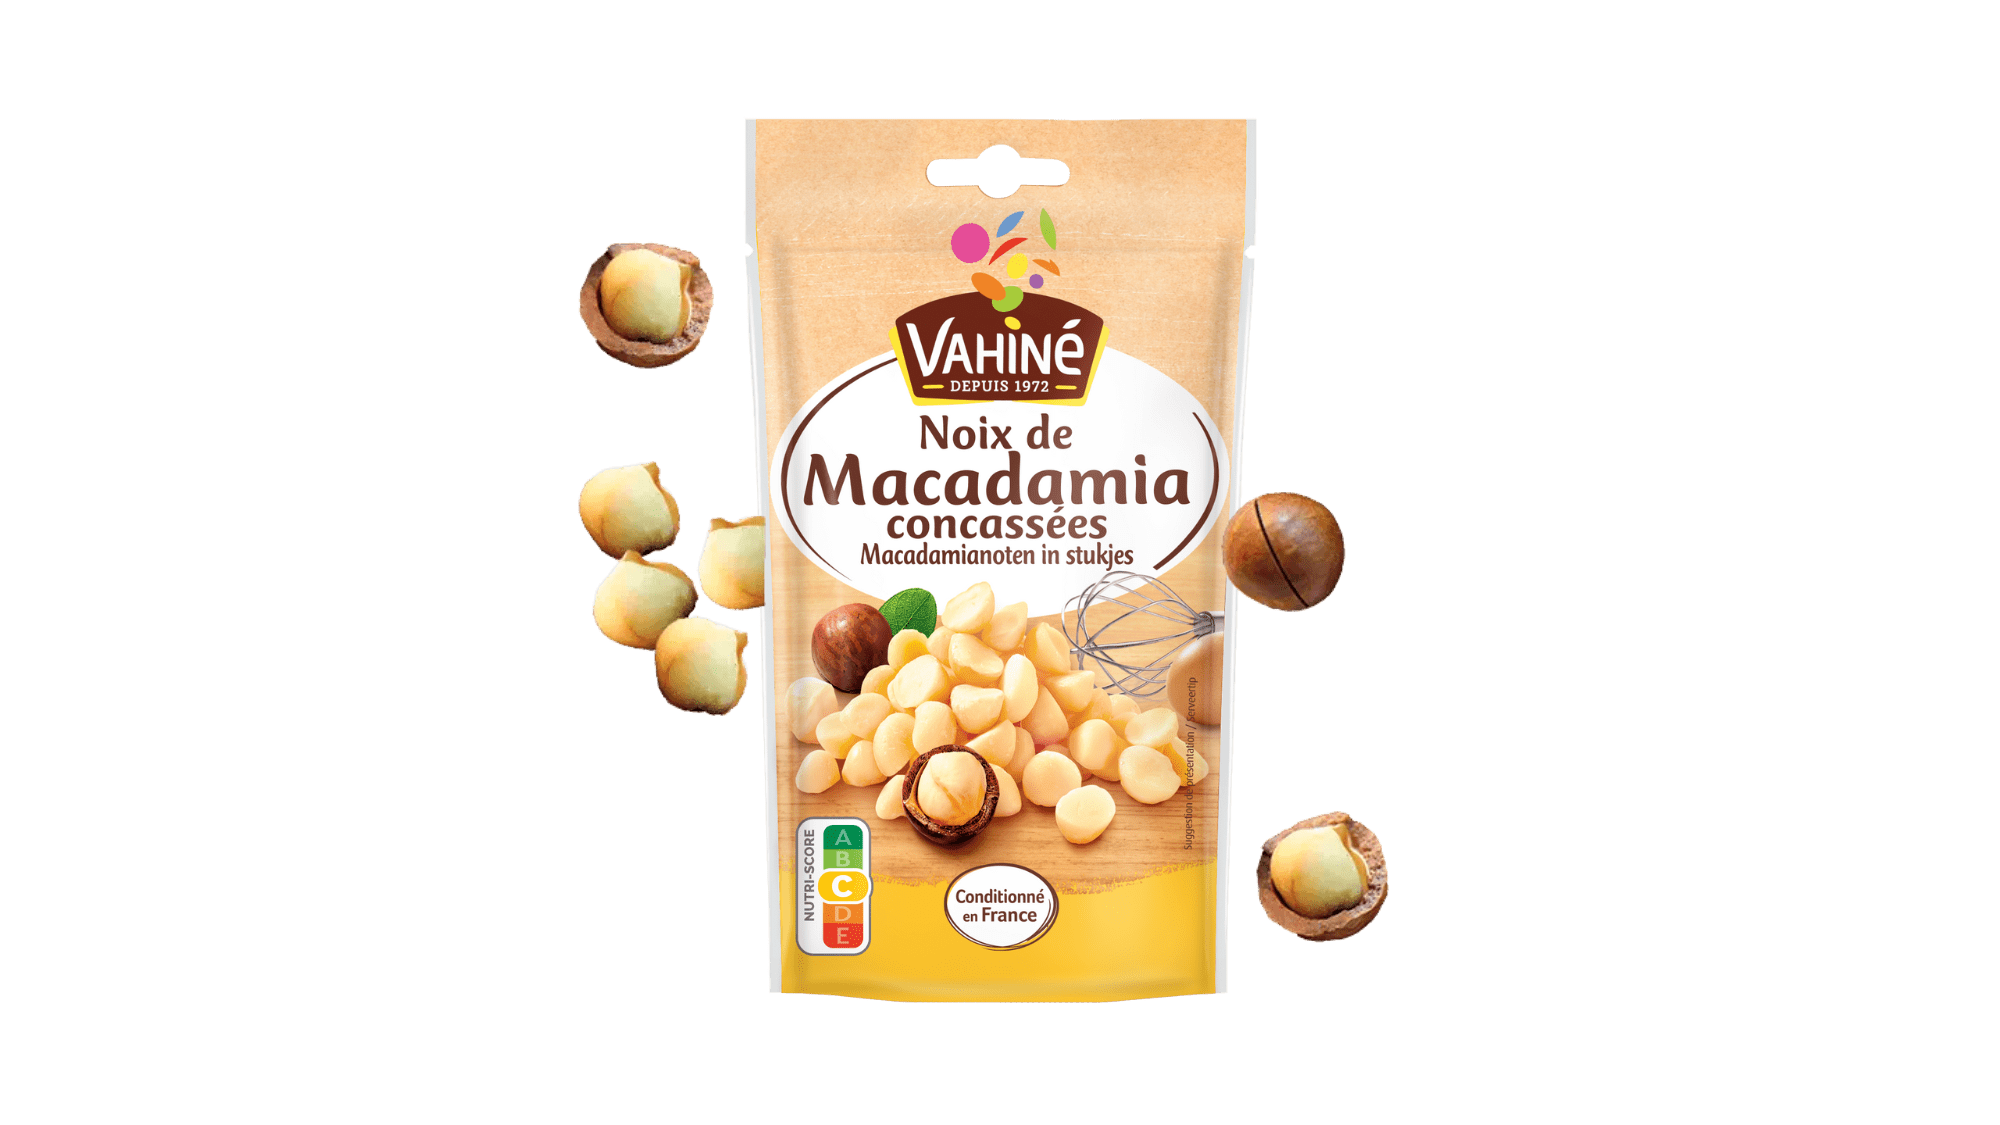 Noix de macadamia caramélisées - Achat et recette - L'ile aux épices